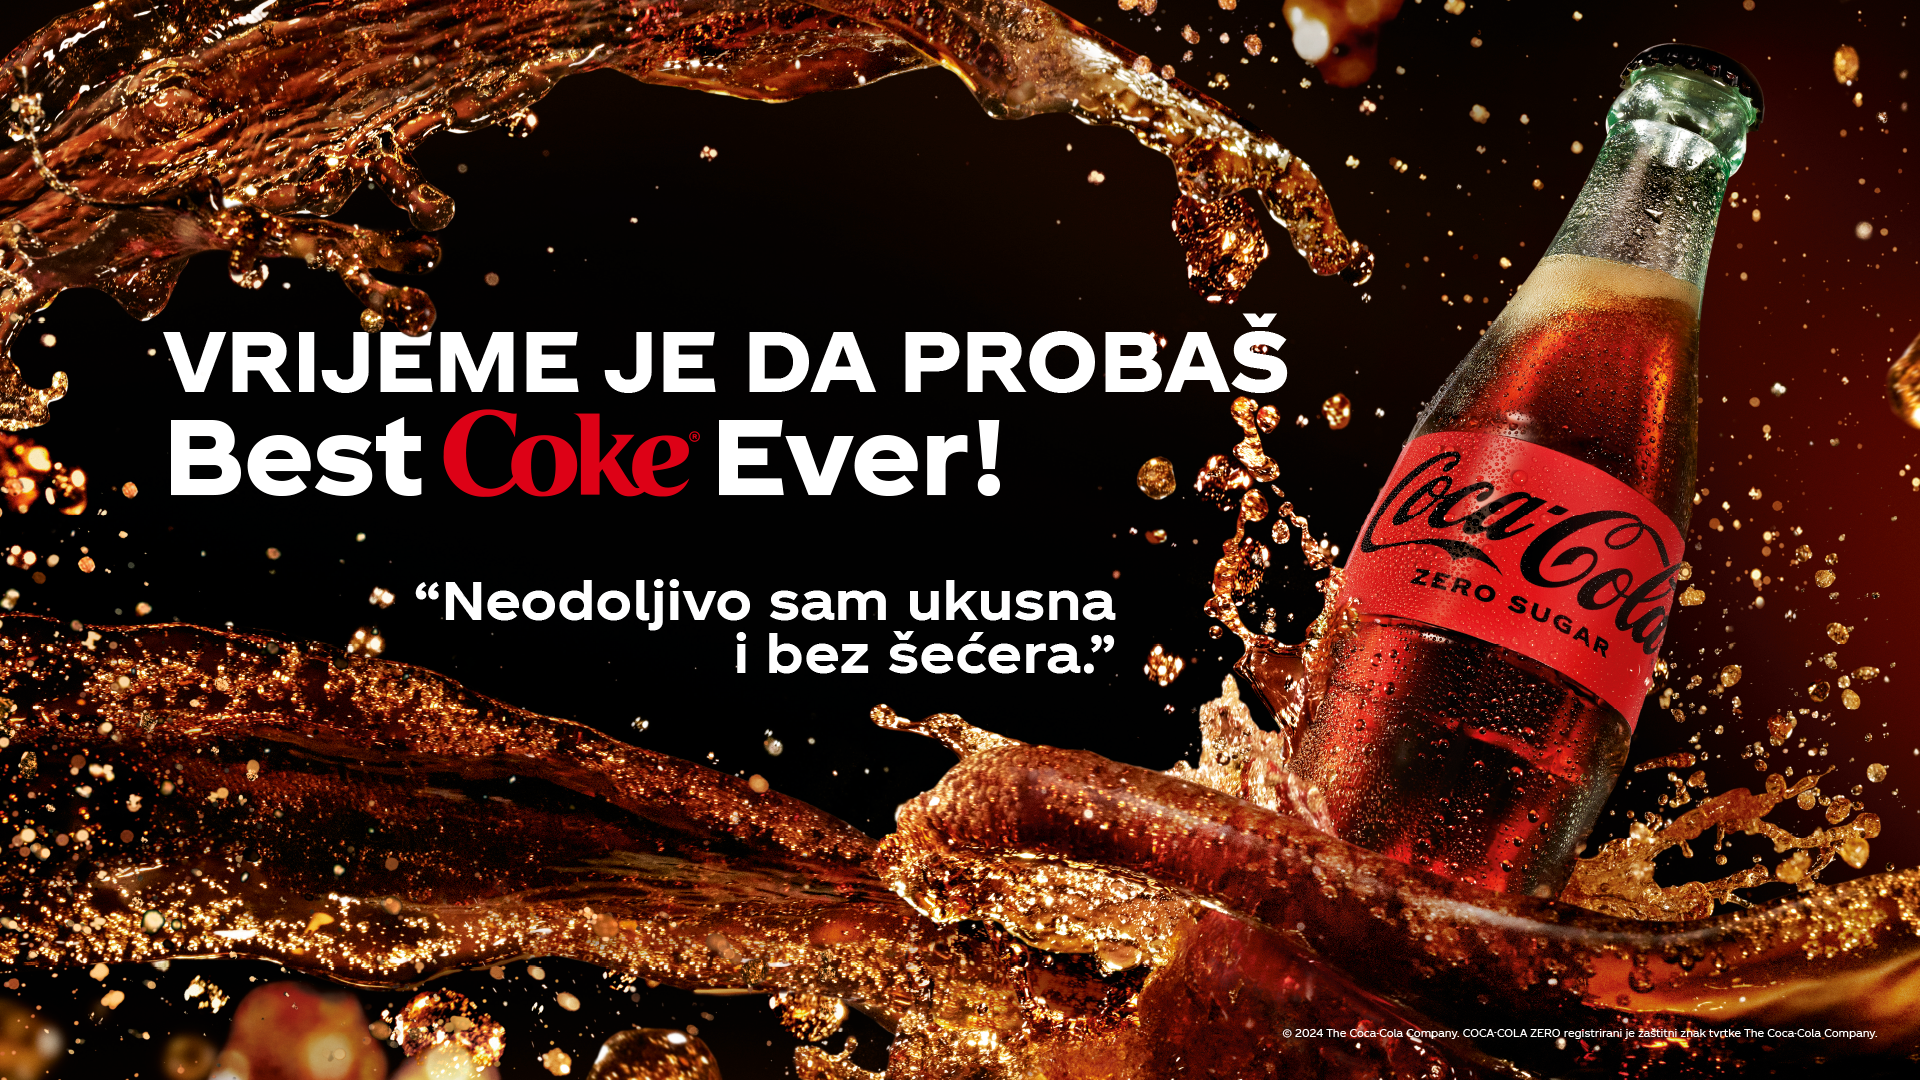 Veseli baner prikazuje bočicu Coca-Cola Zero s sloganom "Nema šećera #nema riječi, okus je predobar za riječi".